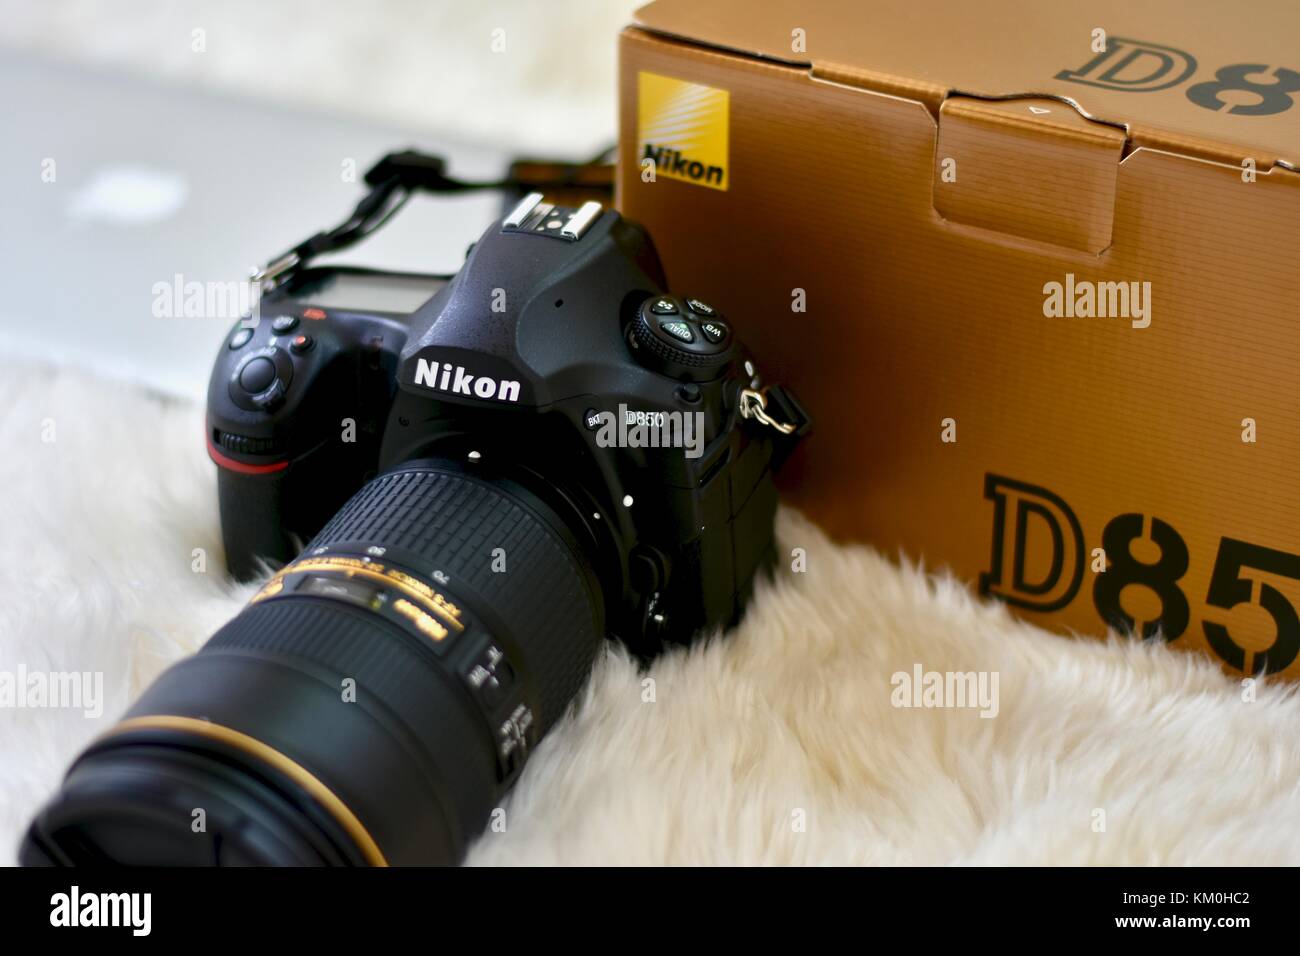 Fotocamera reflex digitale Nikon D850 con obiettivo Nikkor 24-70 Foto Stock